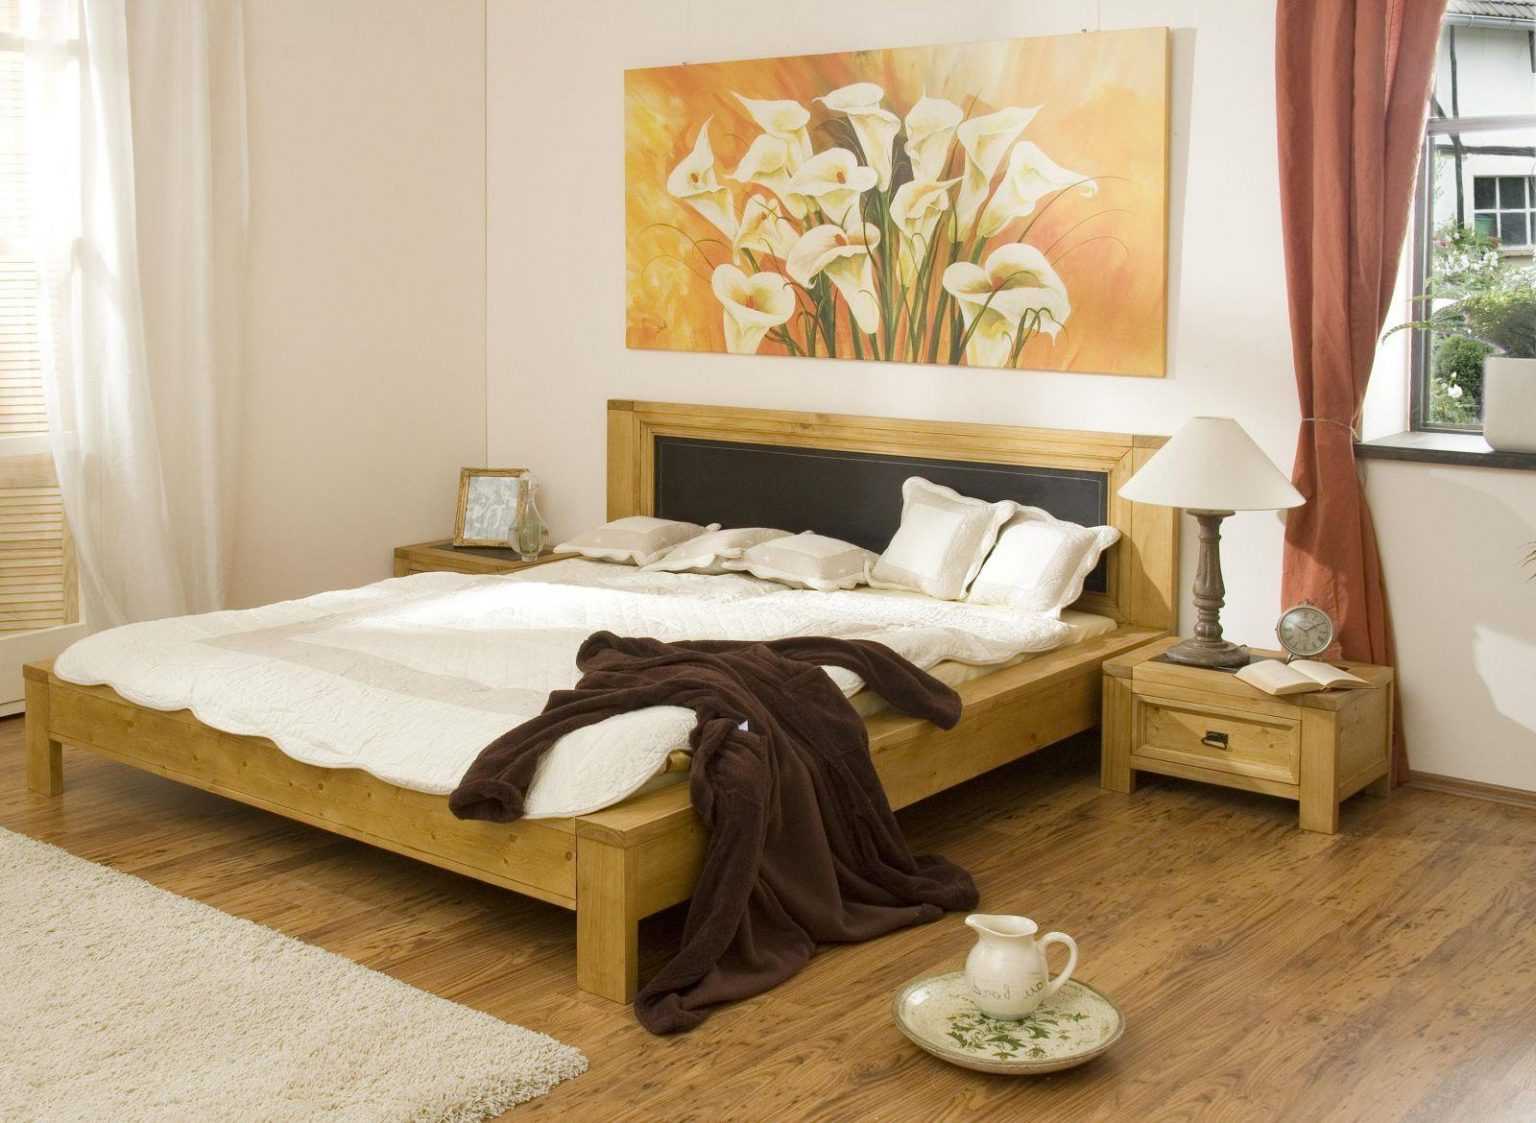 Как поставить кровать в спальне: фэншуй и принципы организация пространства